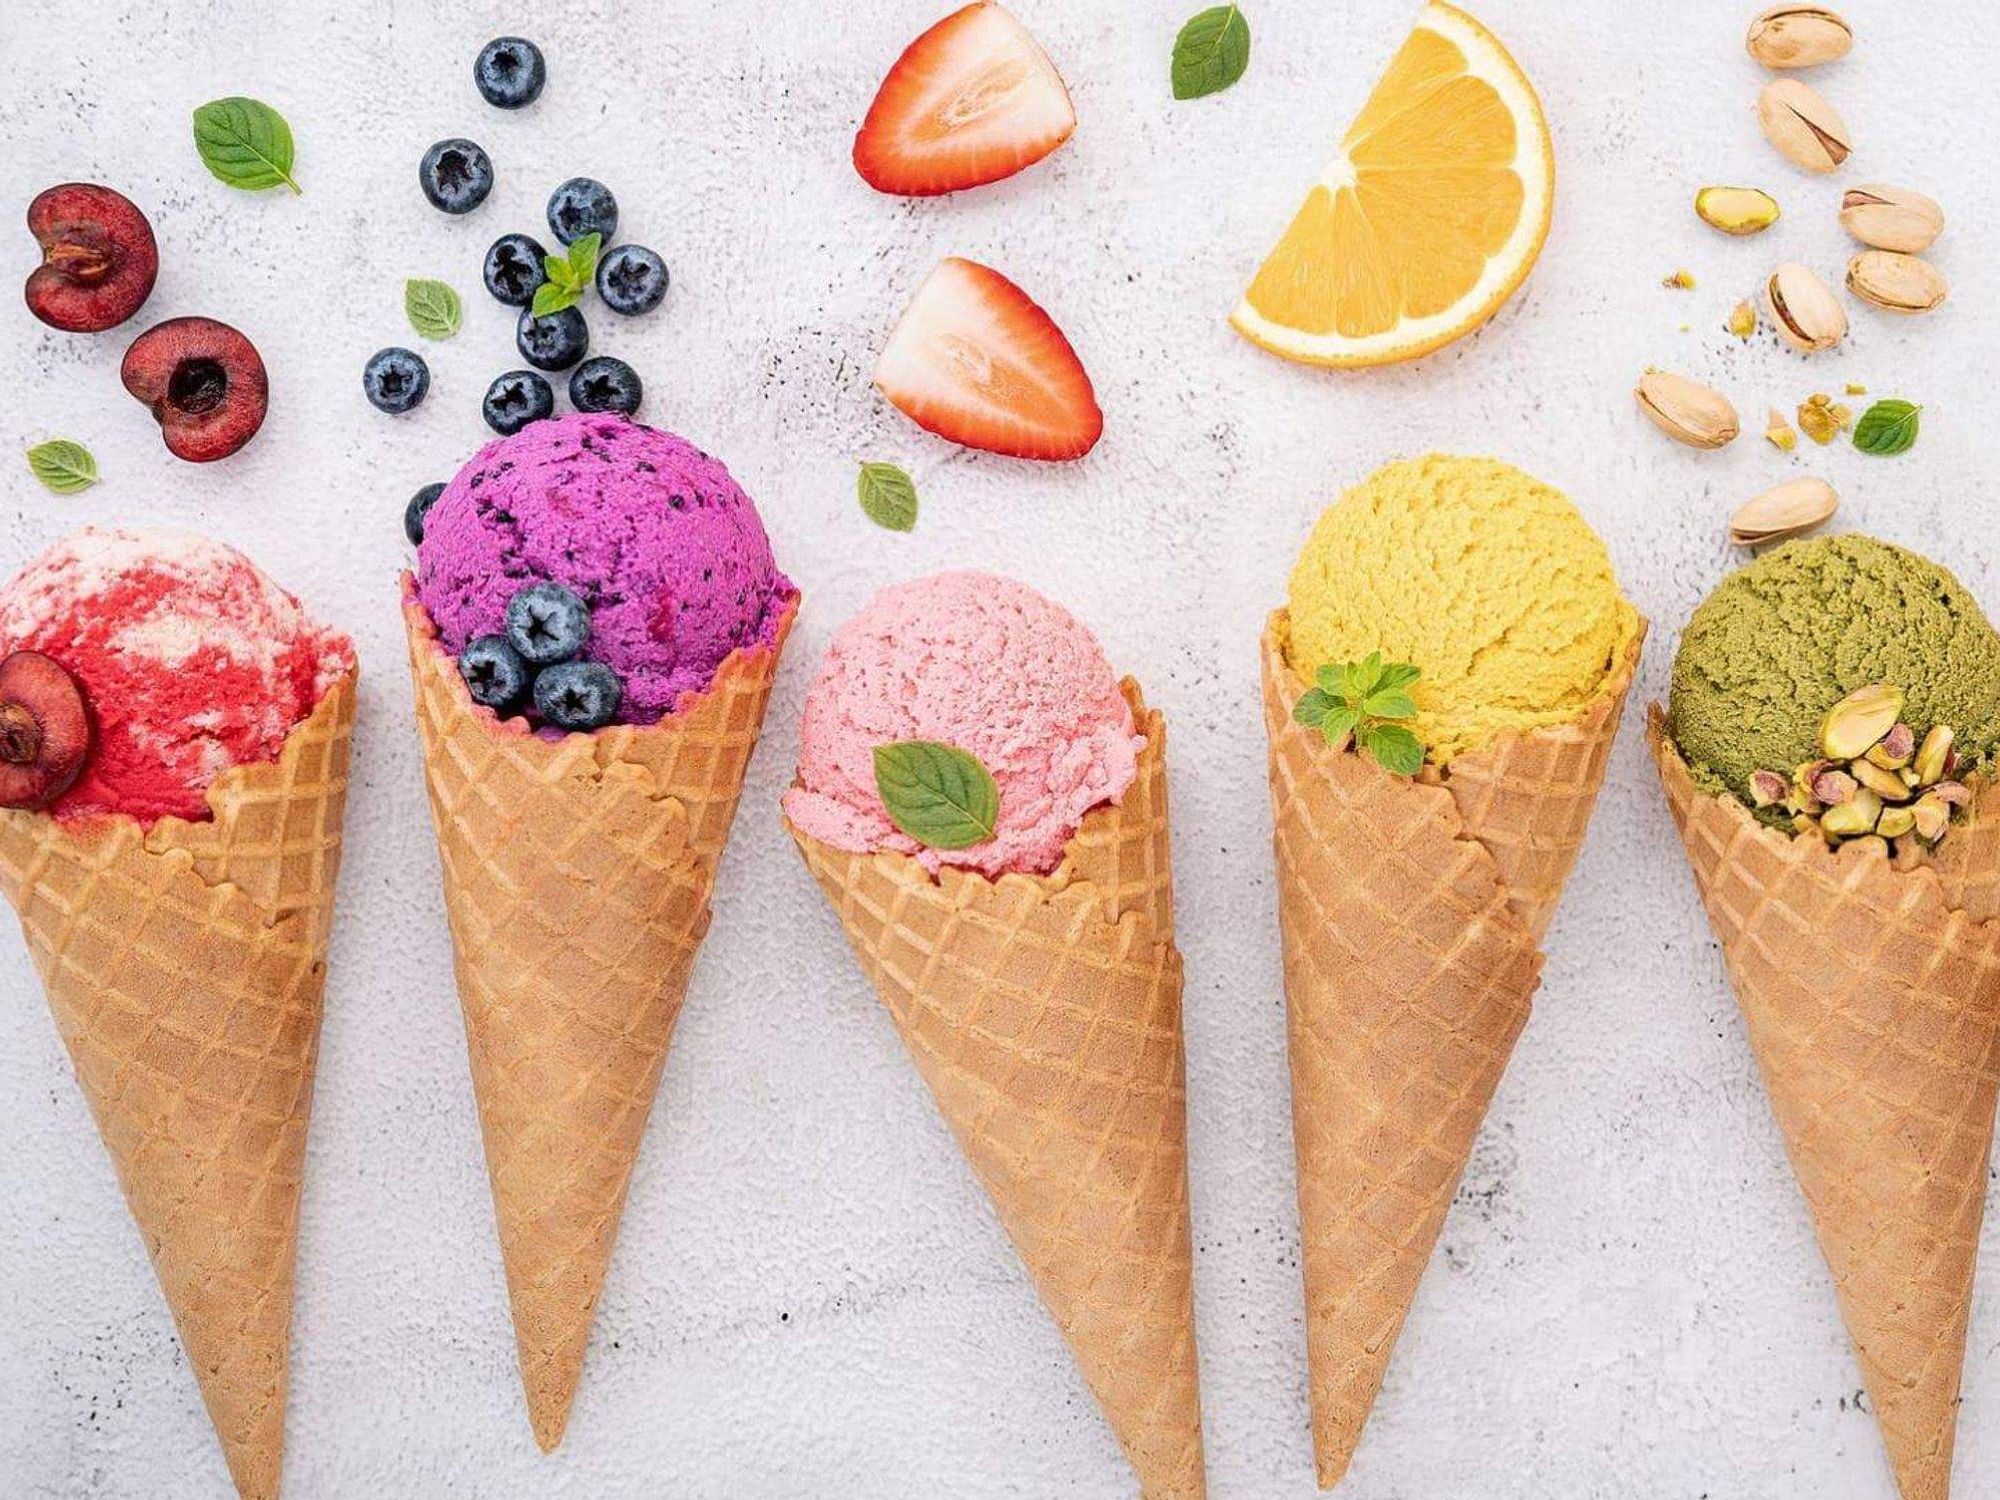 Spurs gelato ice cream cones